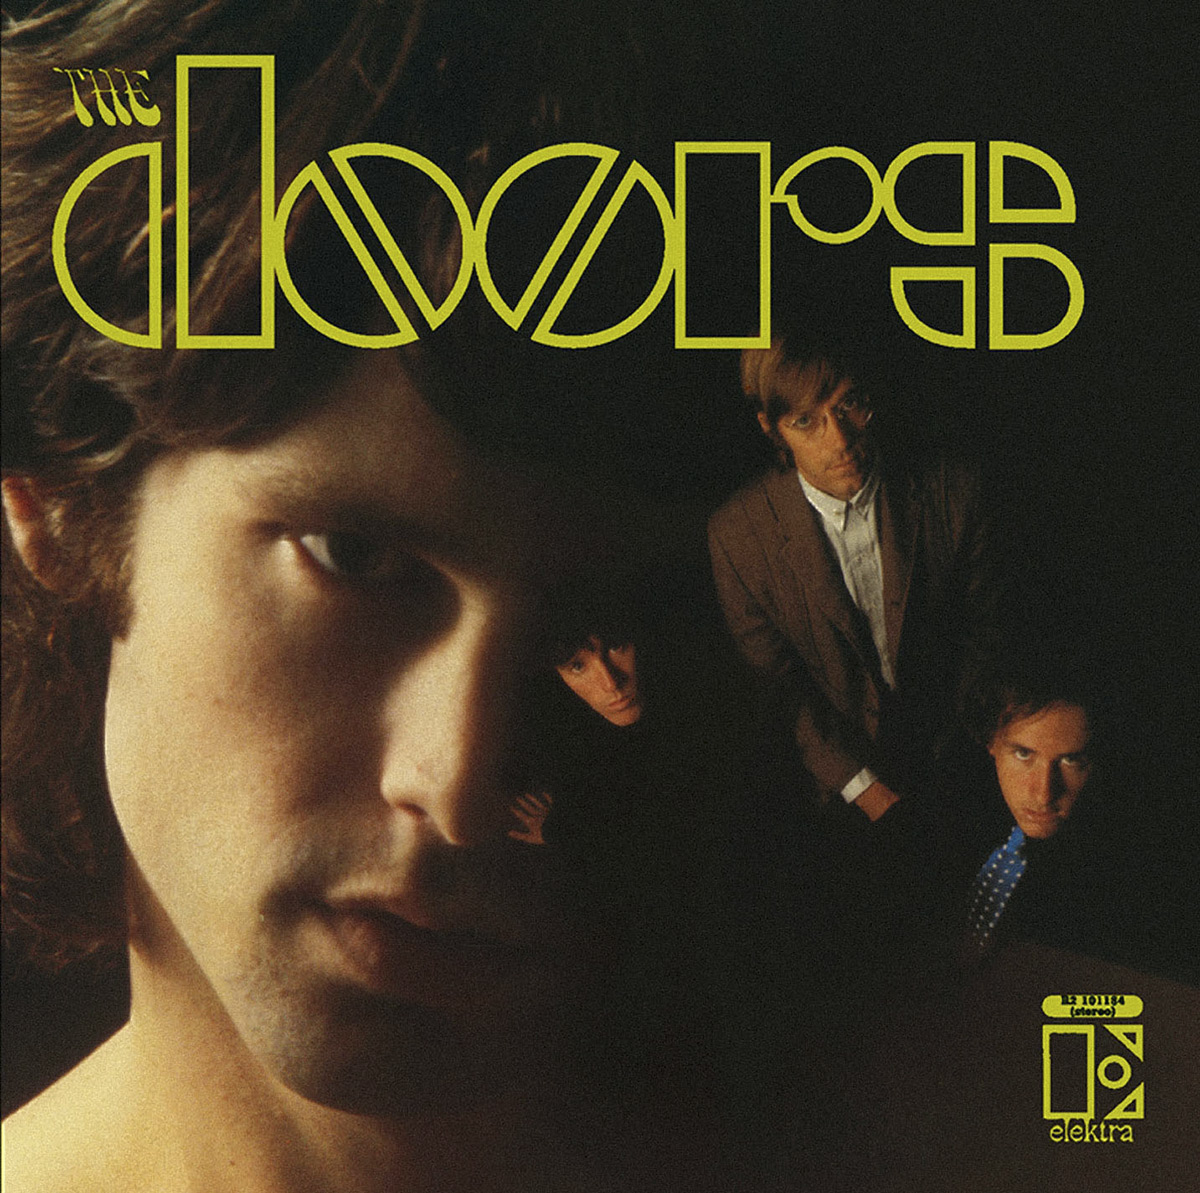 123 ROCK | The Doors - The Doors - 1967 | Album Cover